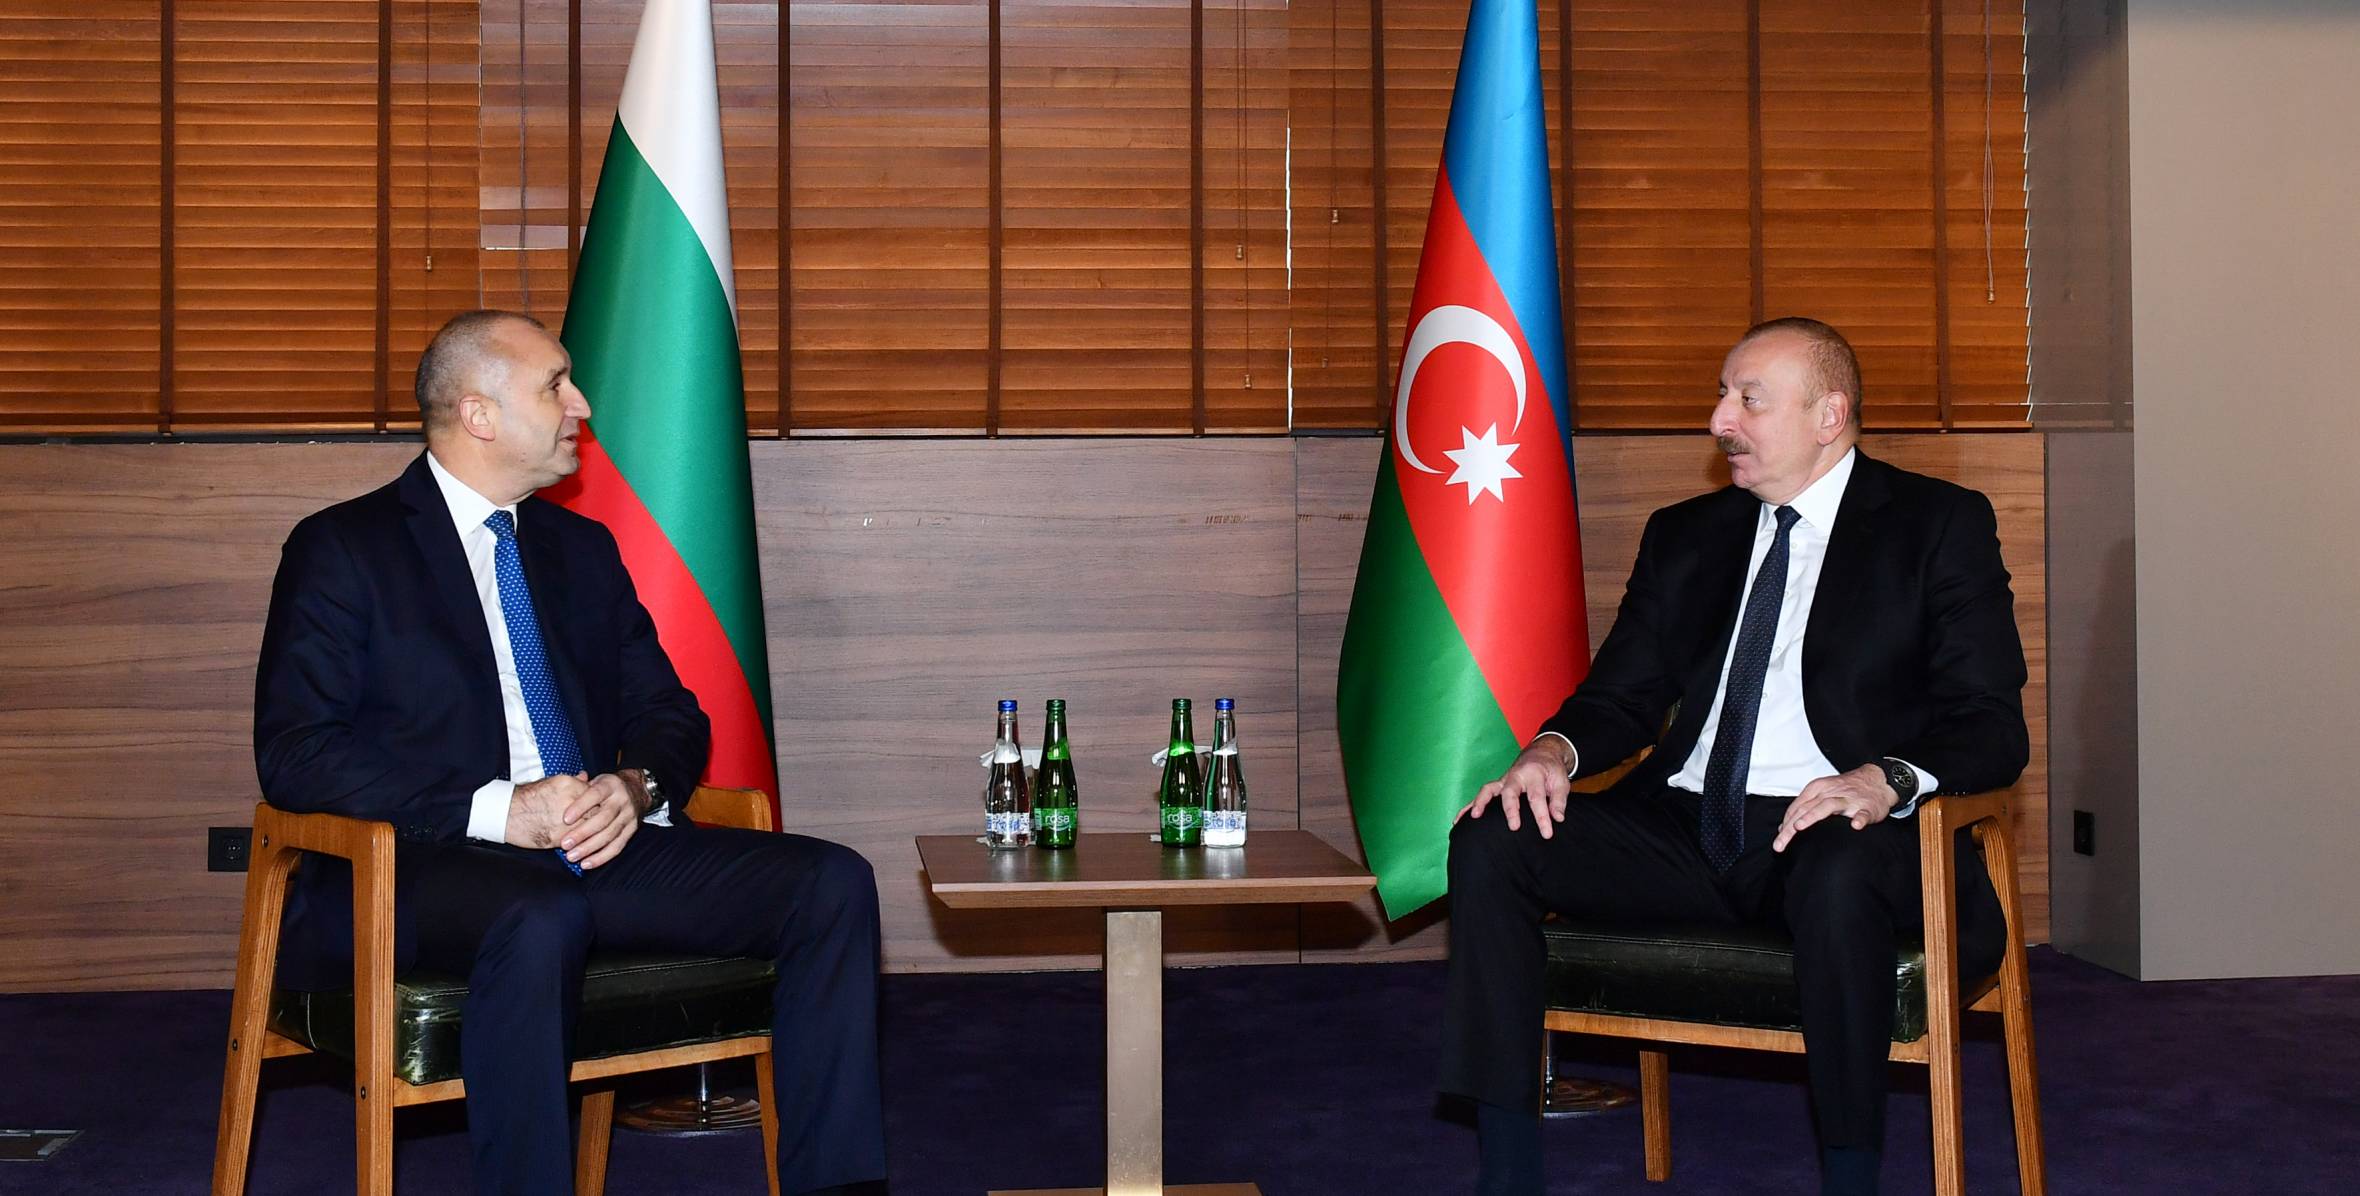 Ilham Aliyev held one-on-one meeting with President of Bulgaria Rumen Radev